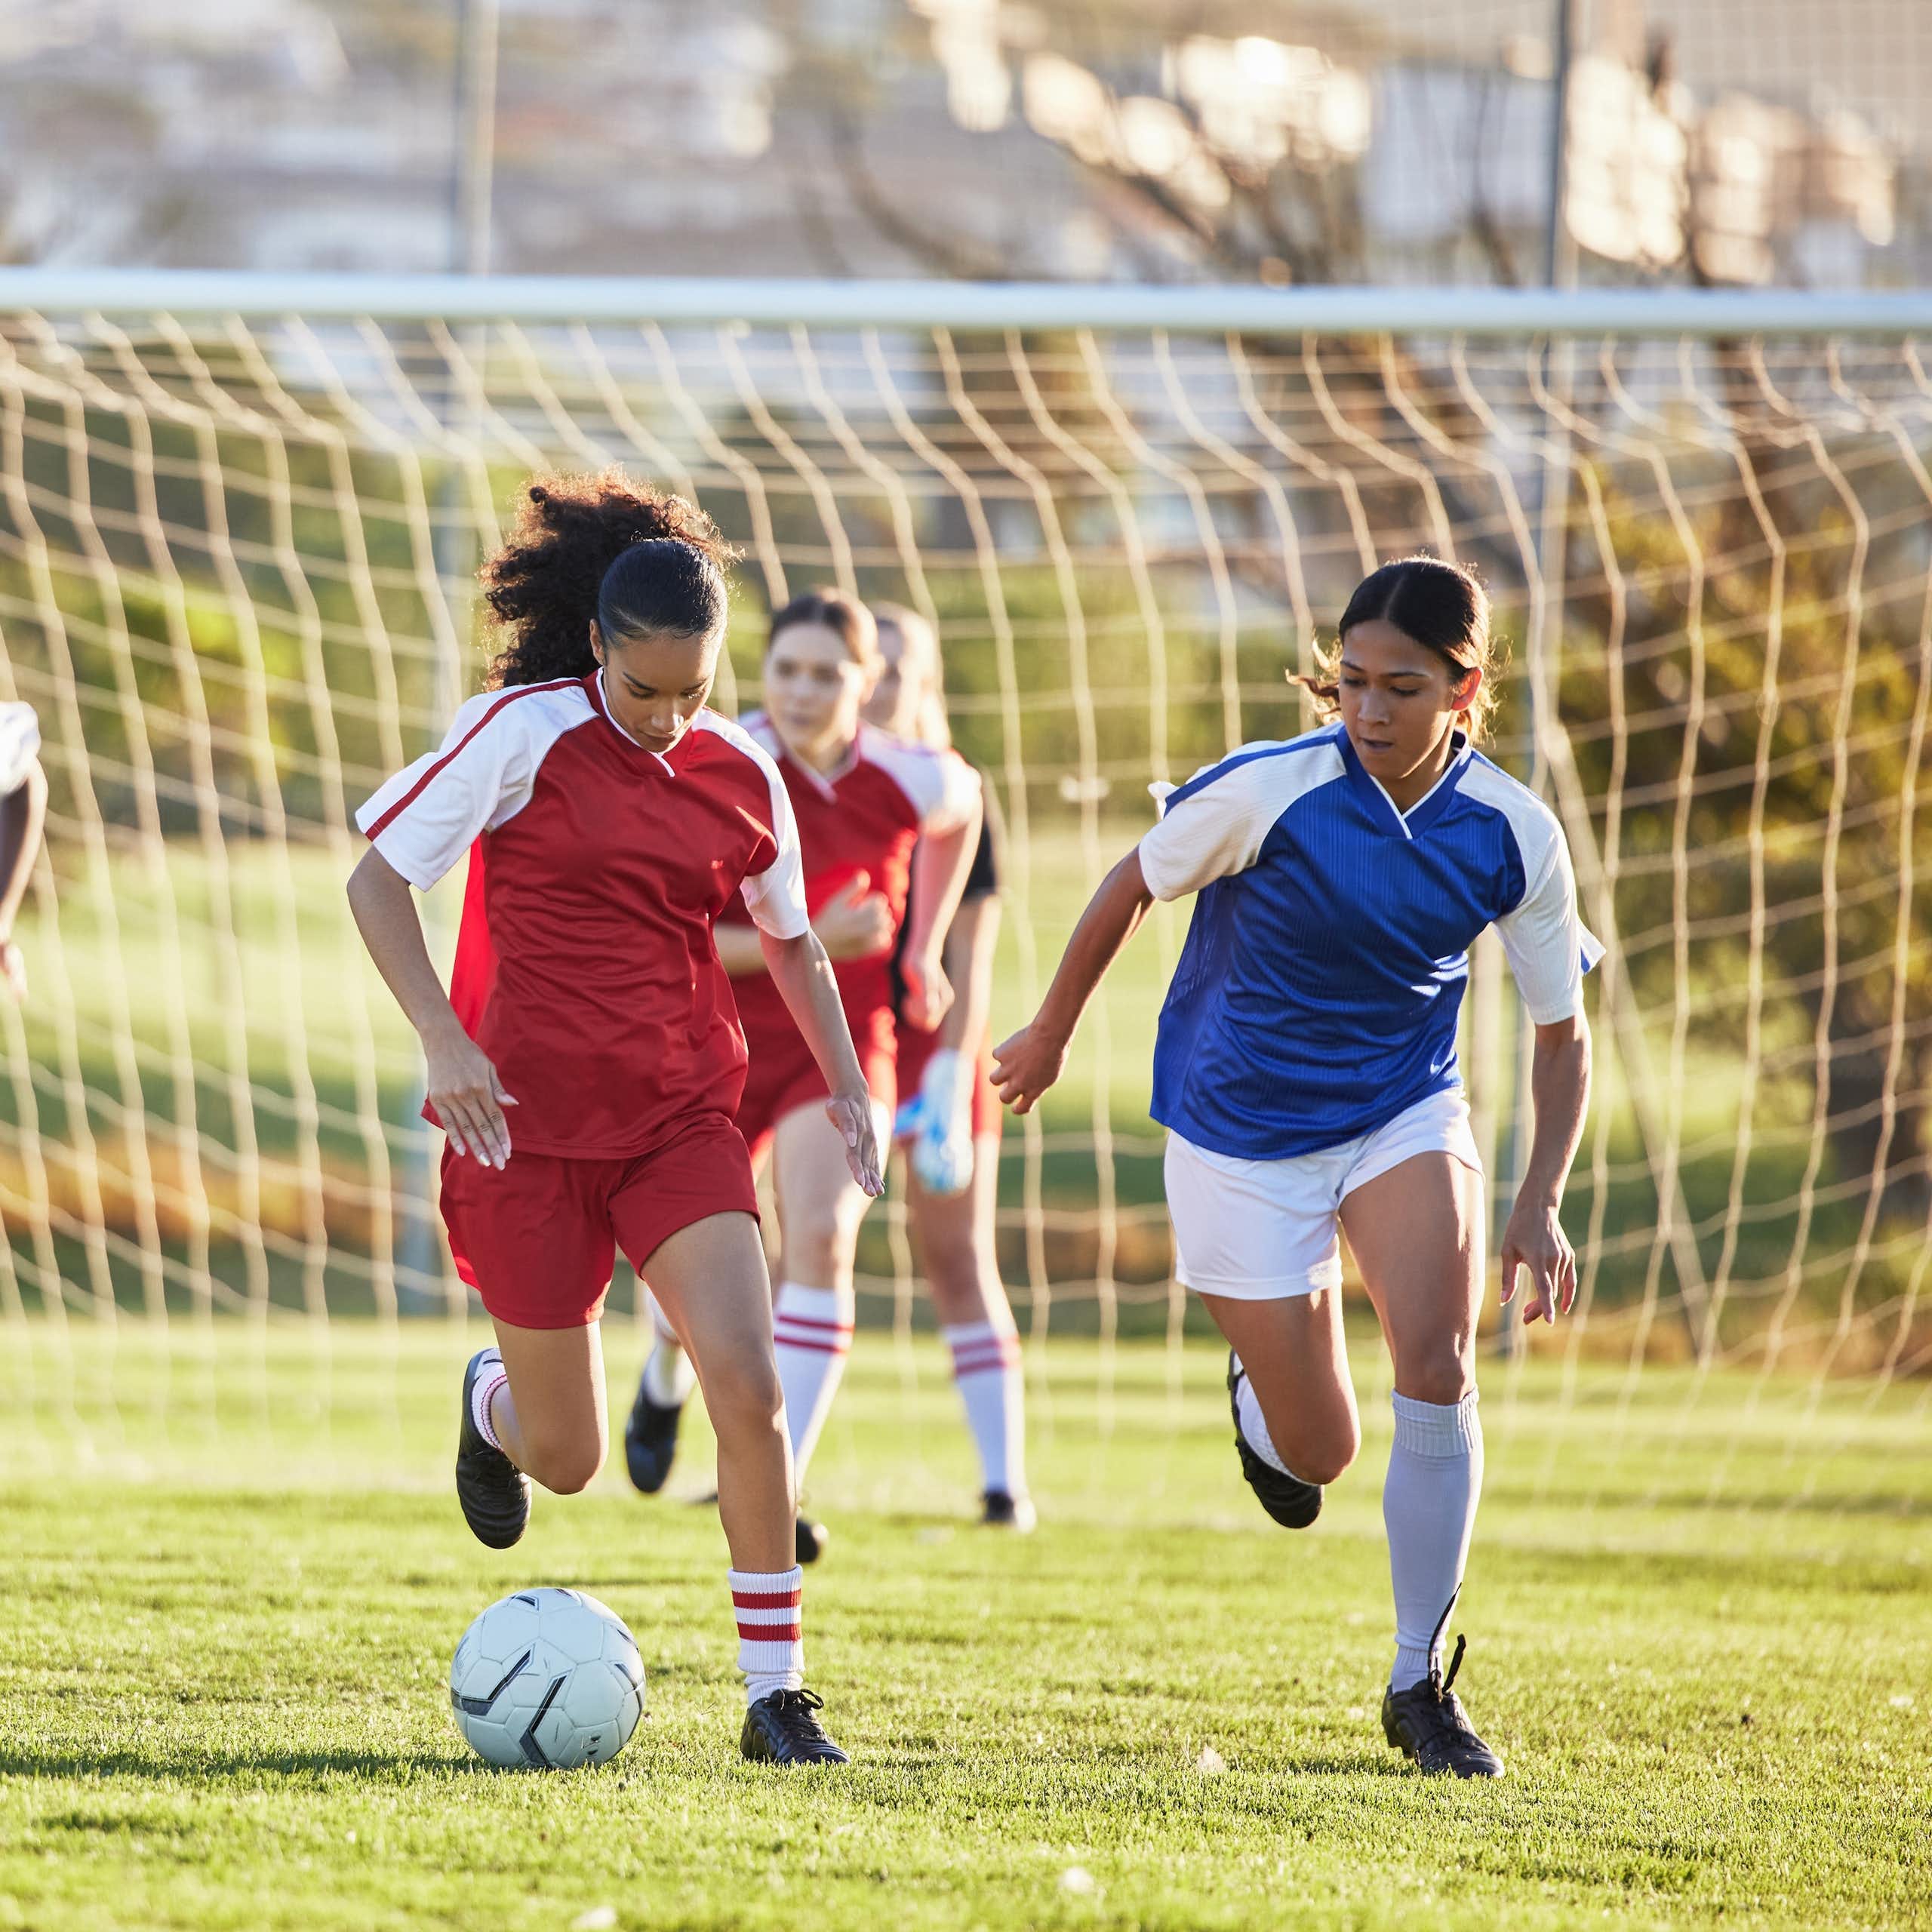 Sur un terrain de football, deux équipes de foot féminines s'affrontent.